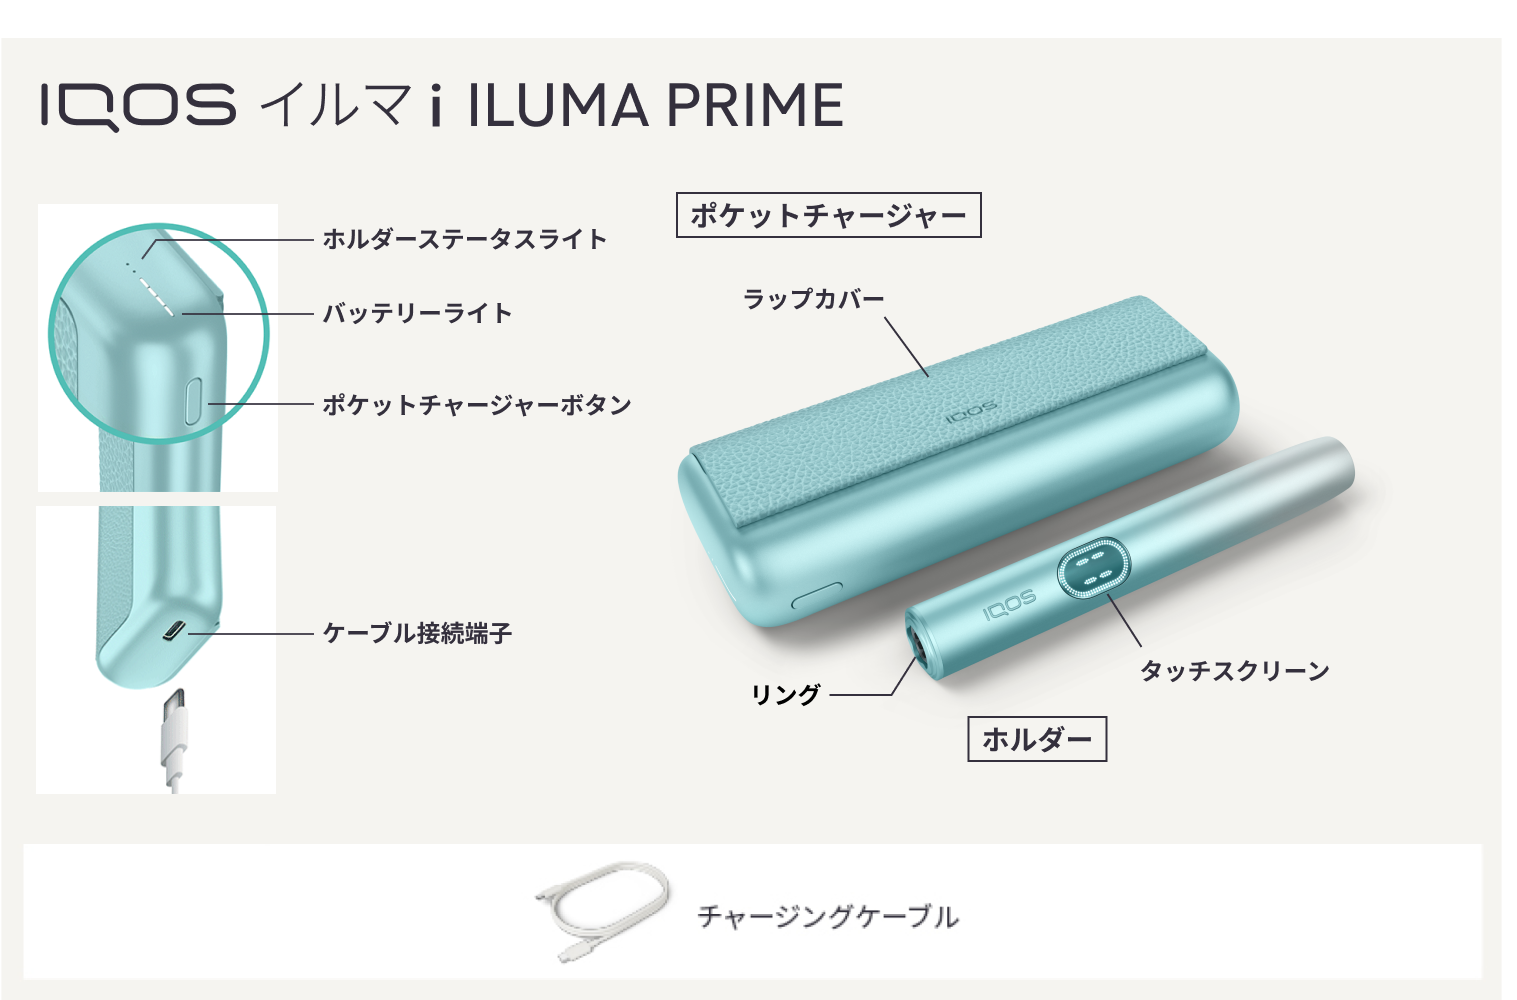 IQOS ILUMA i PRIMEの各パーツ名と付属品